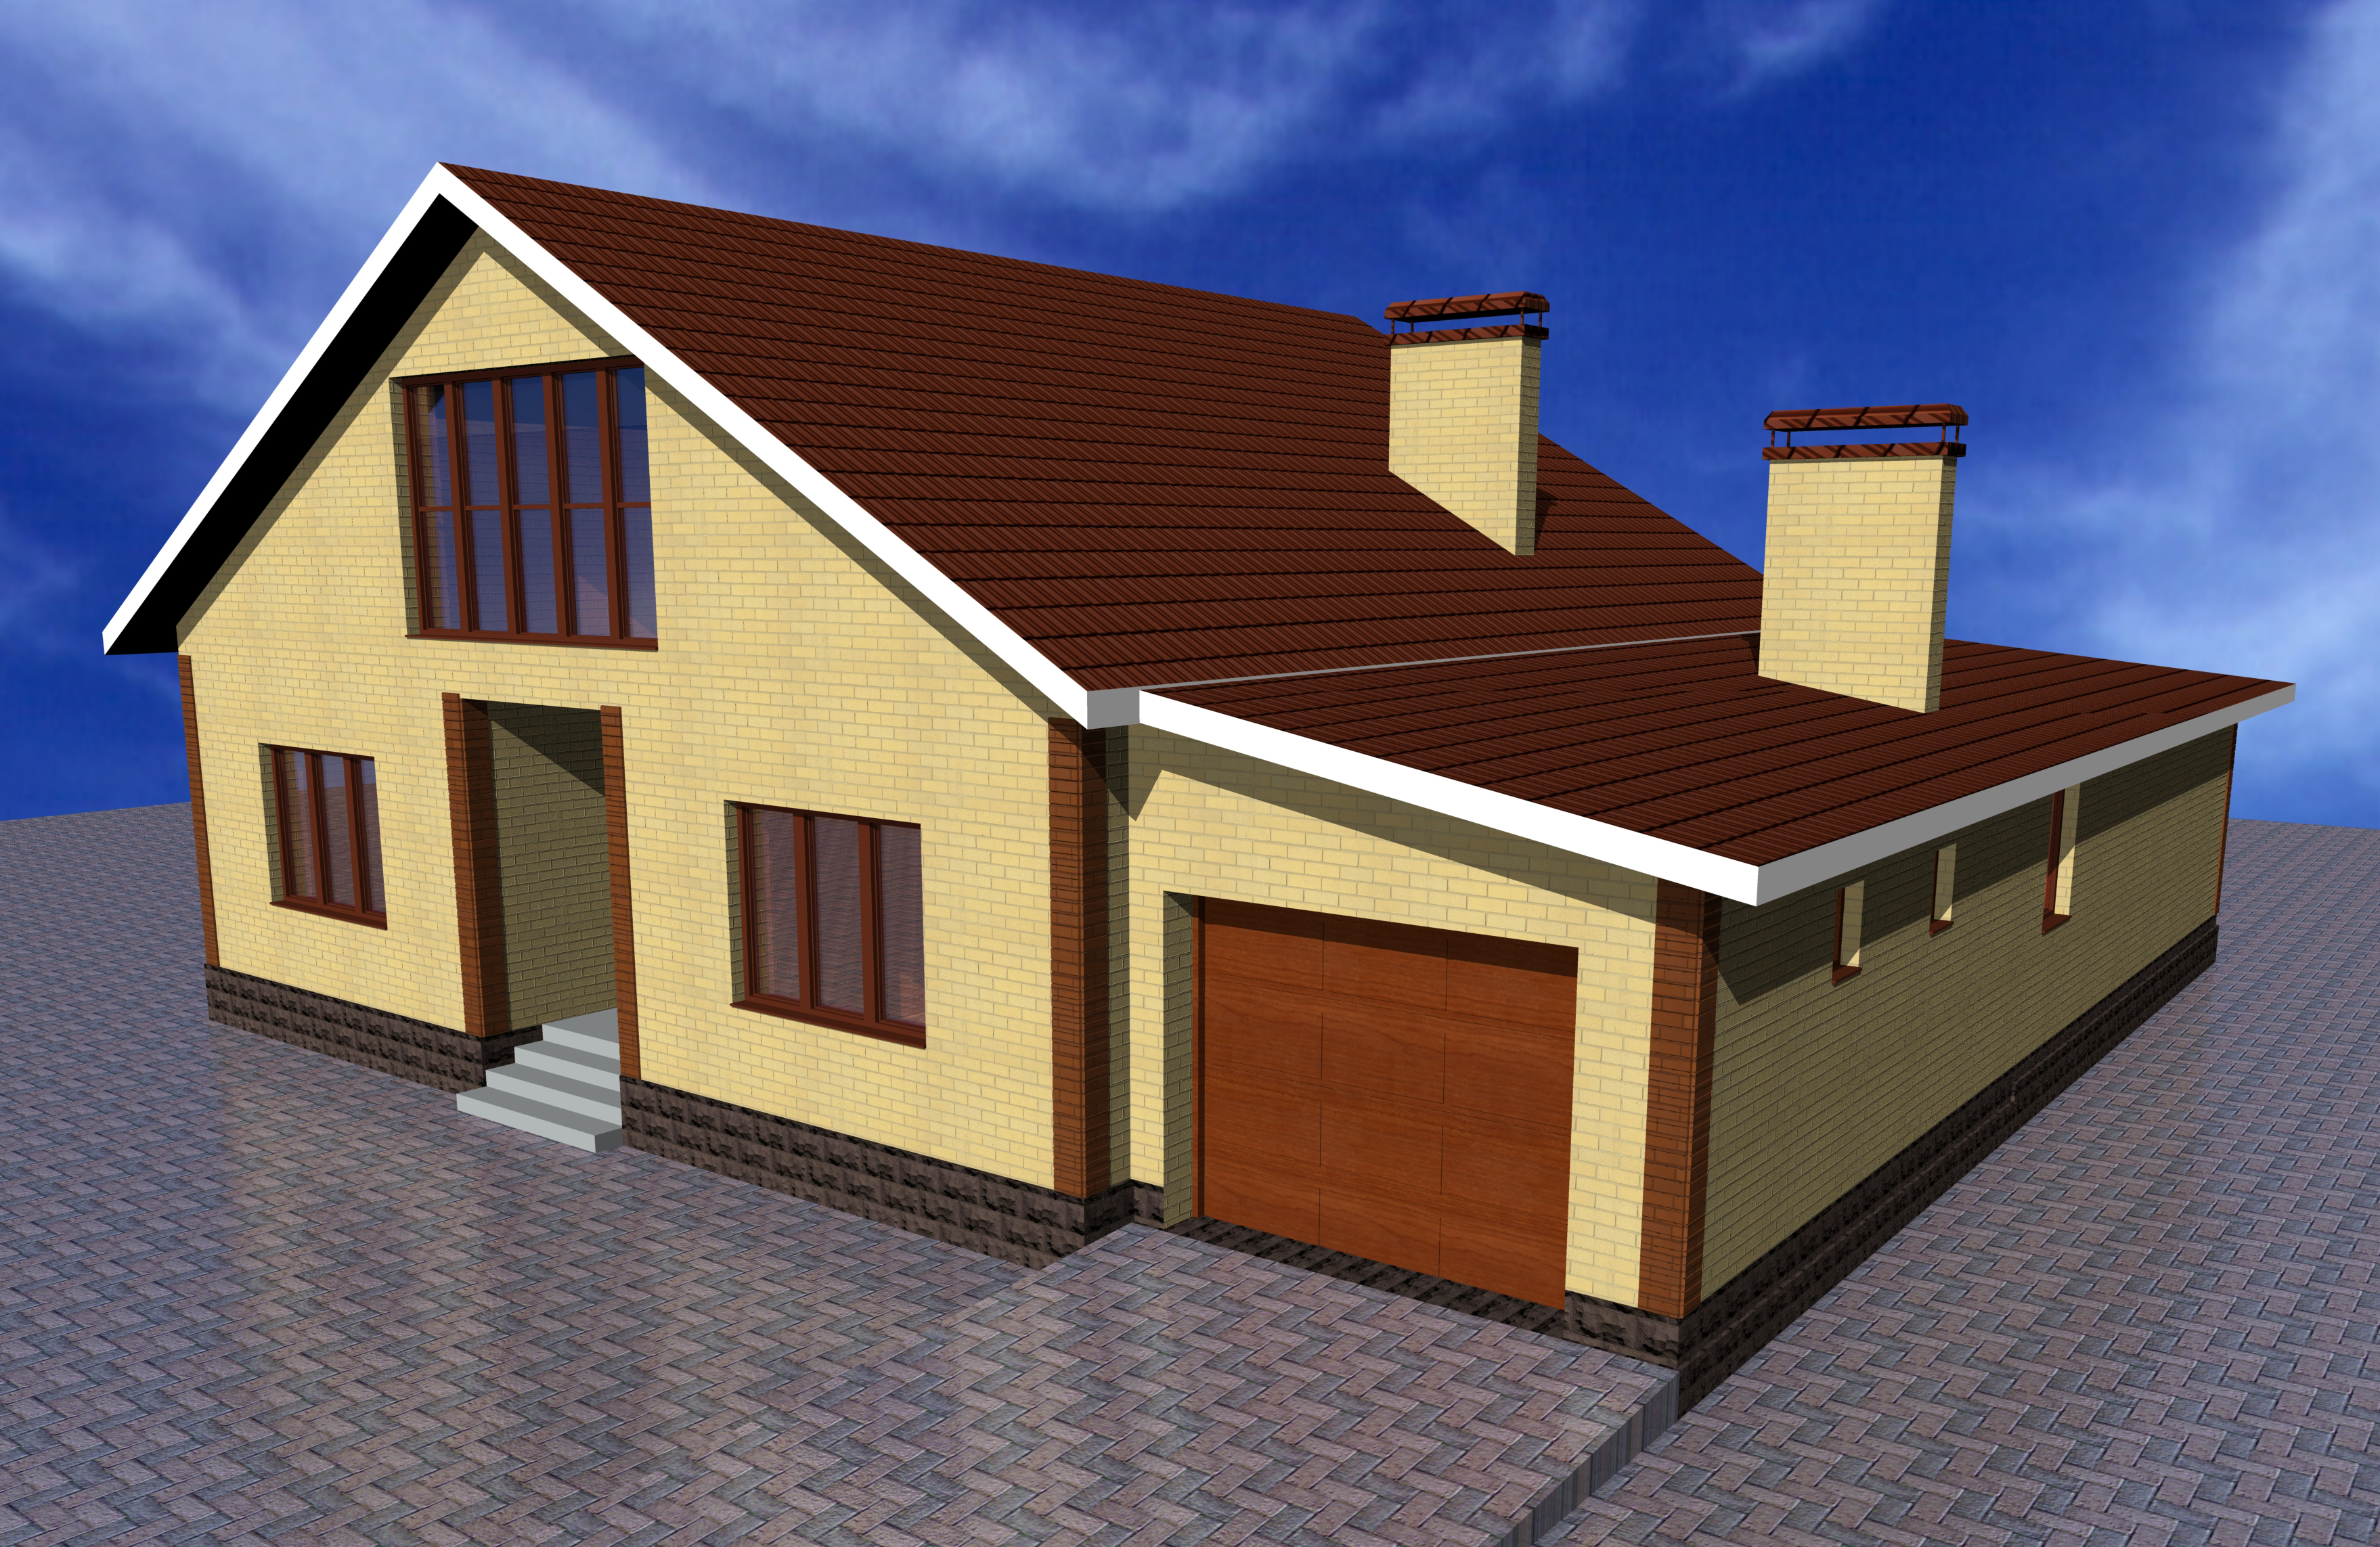 Фото крыши гаража с домом. Многоскатная крыша гаража. Дом с гаражом под одной крышей. Одноэтажноый дома с гаражом. Дом сгпражом под одной крышей.